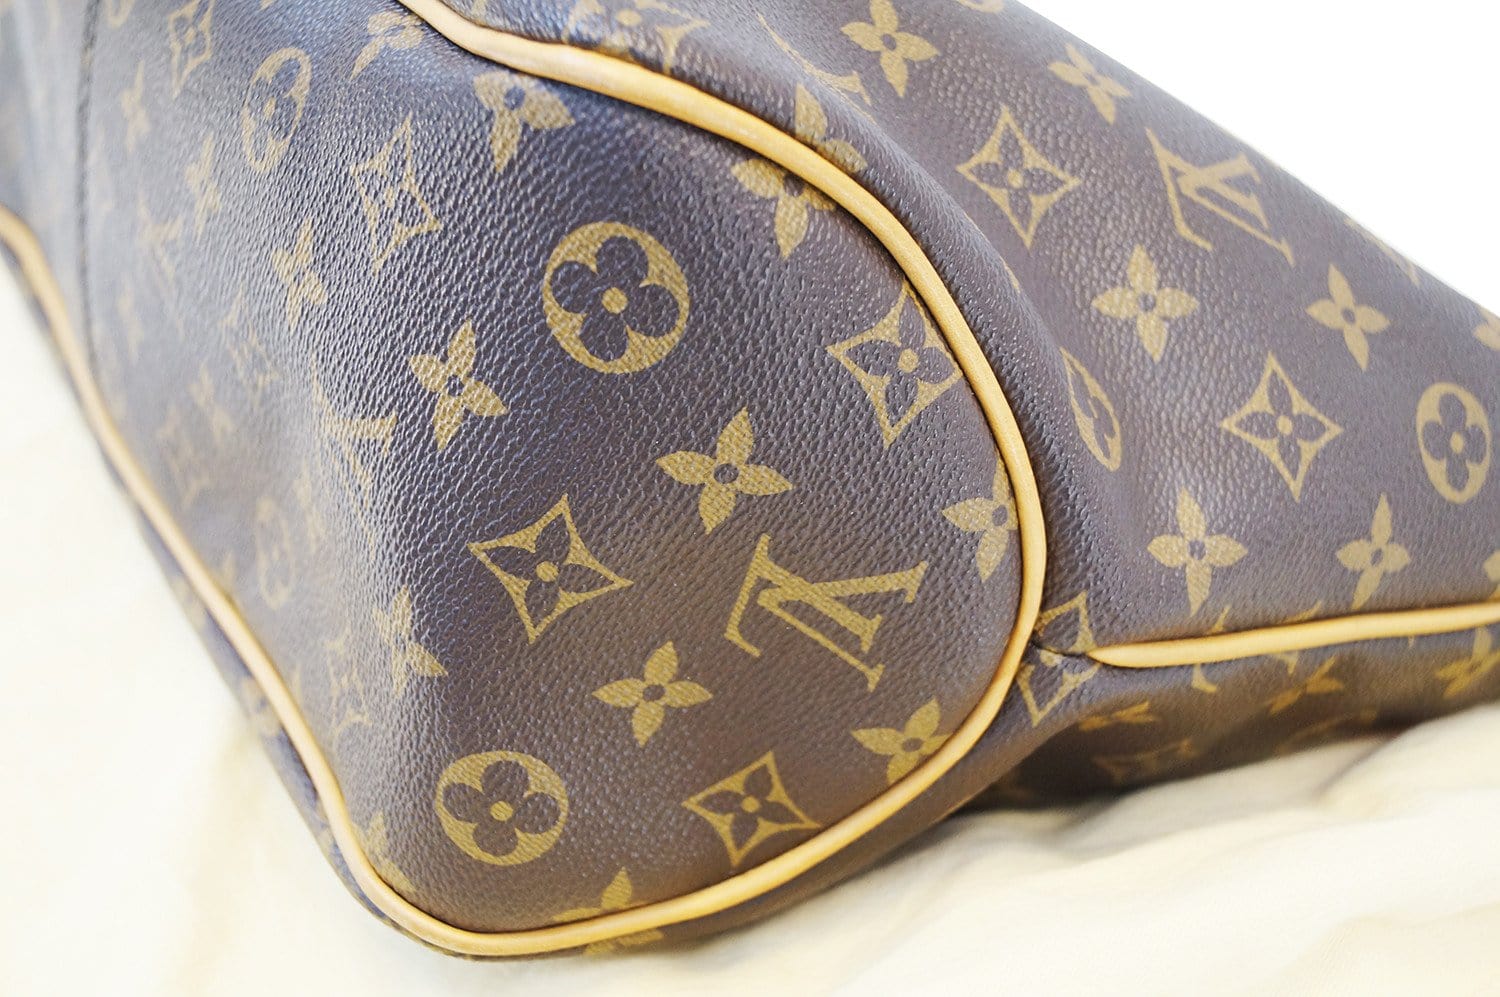 Louis Vuitton, Bags, Louis Vuitton Shoulder Bag Delightful Pm Monogram